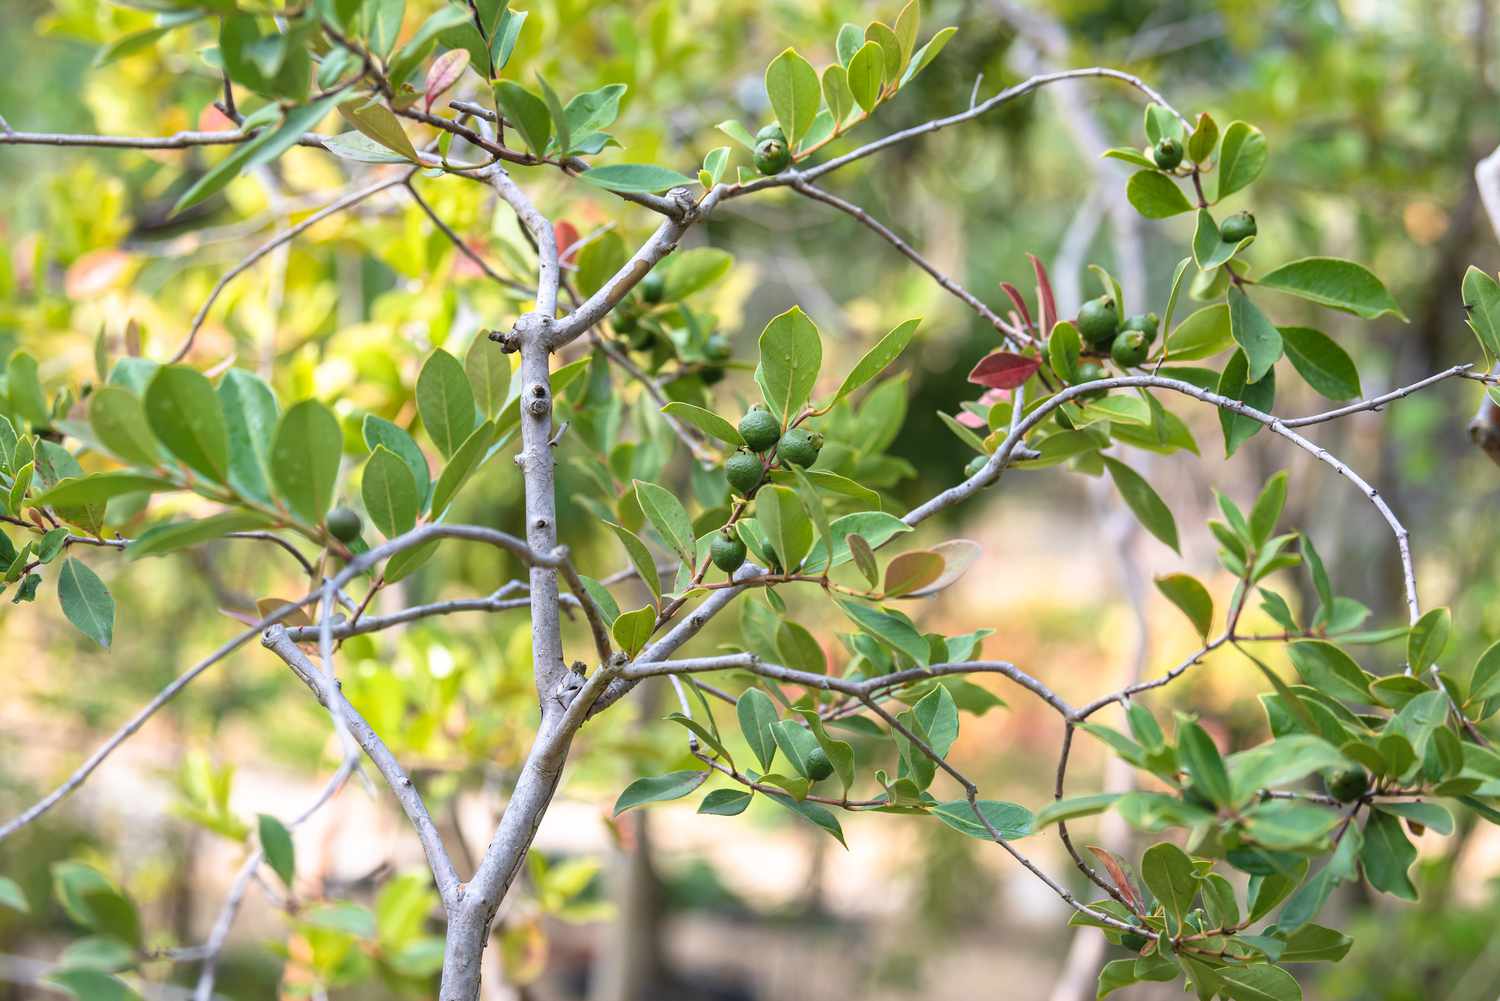 Ananas-Guavenbaum mit kleinen runden grünen Früchten an Zweigen mit pfeilförmigen Blättern